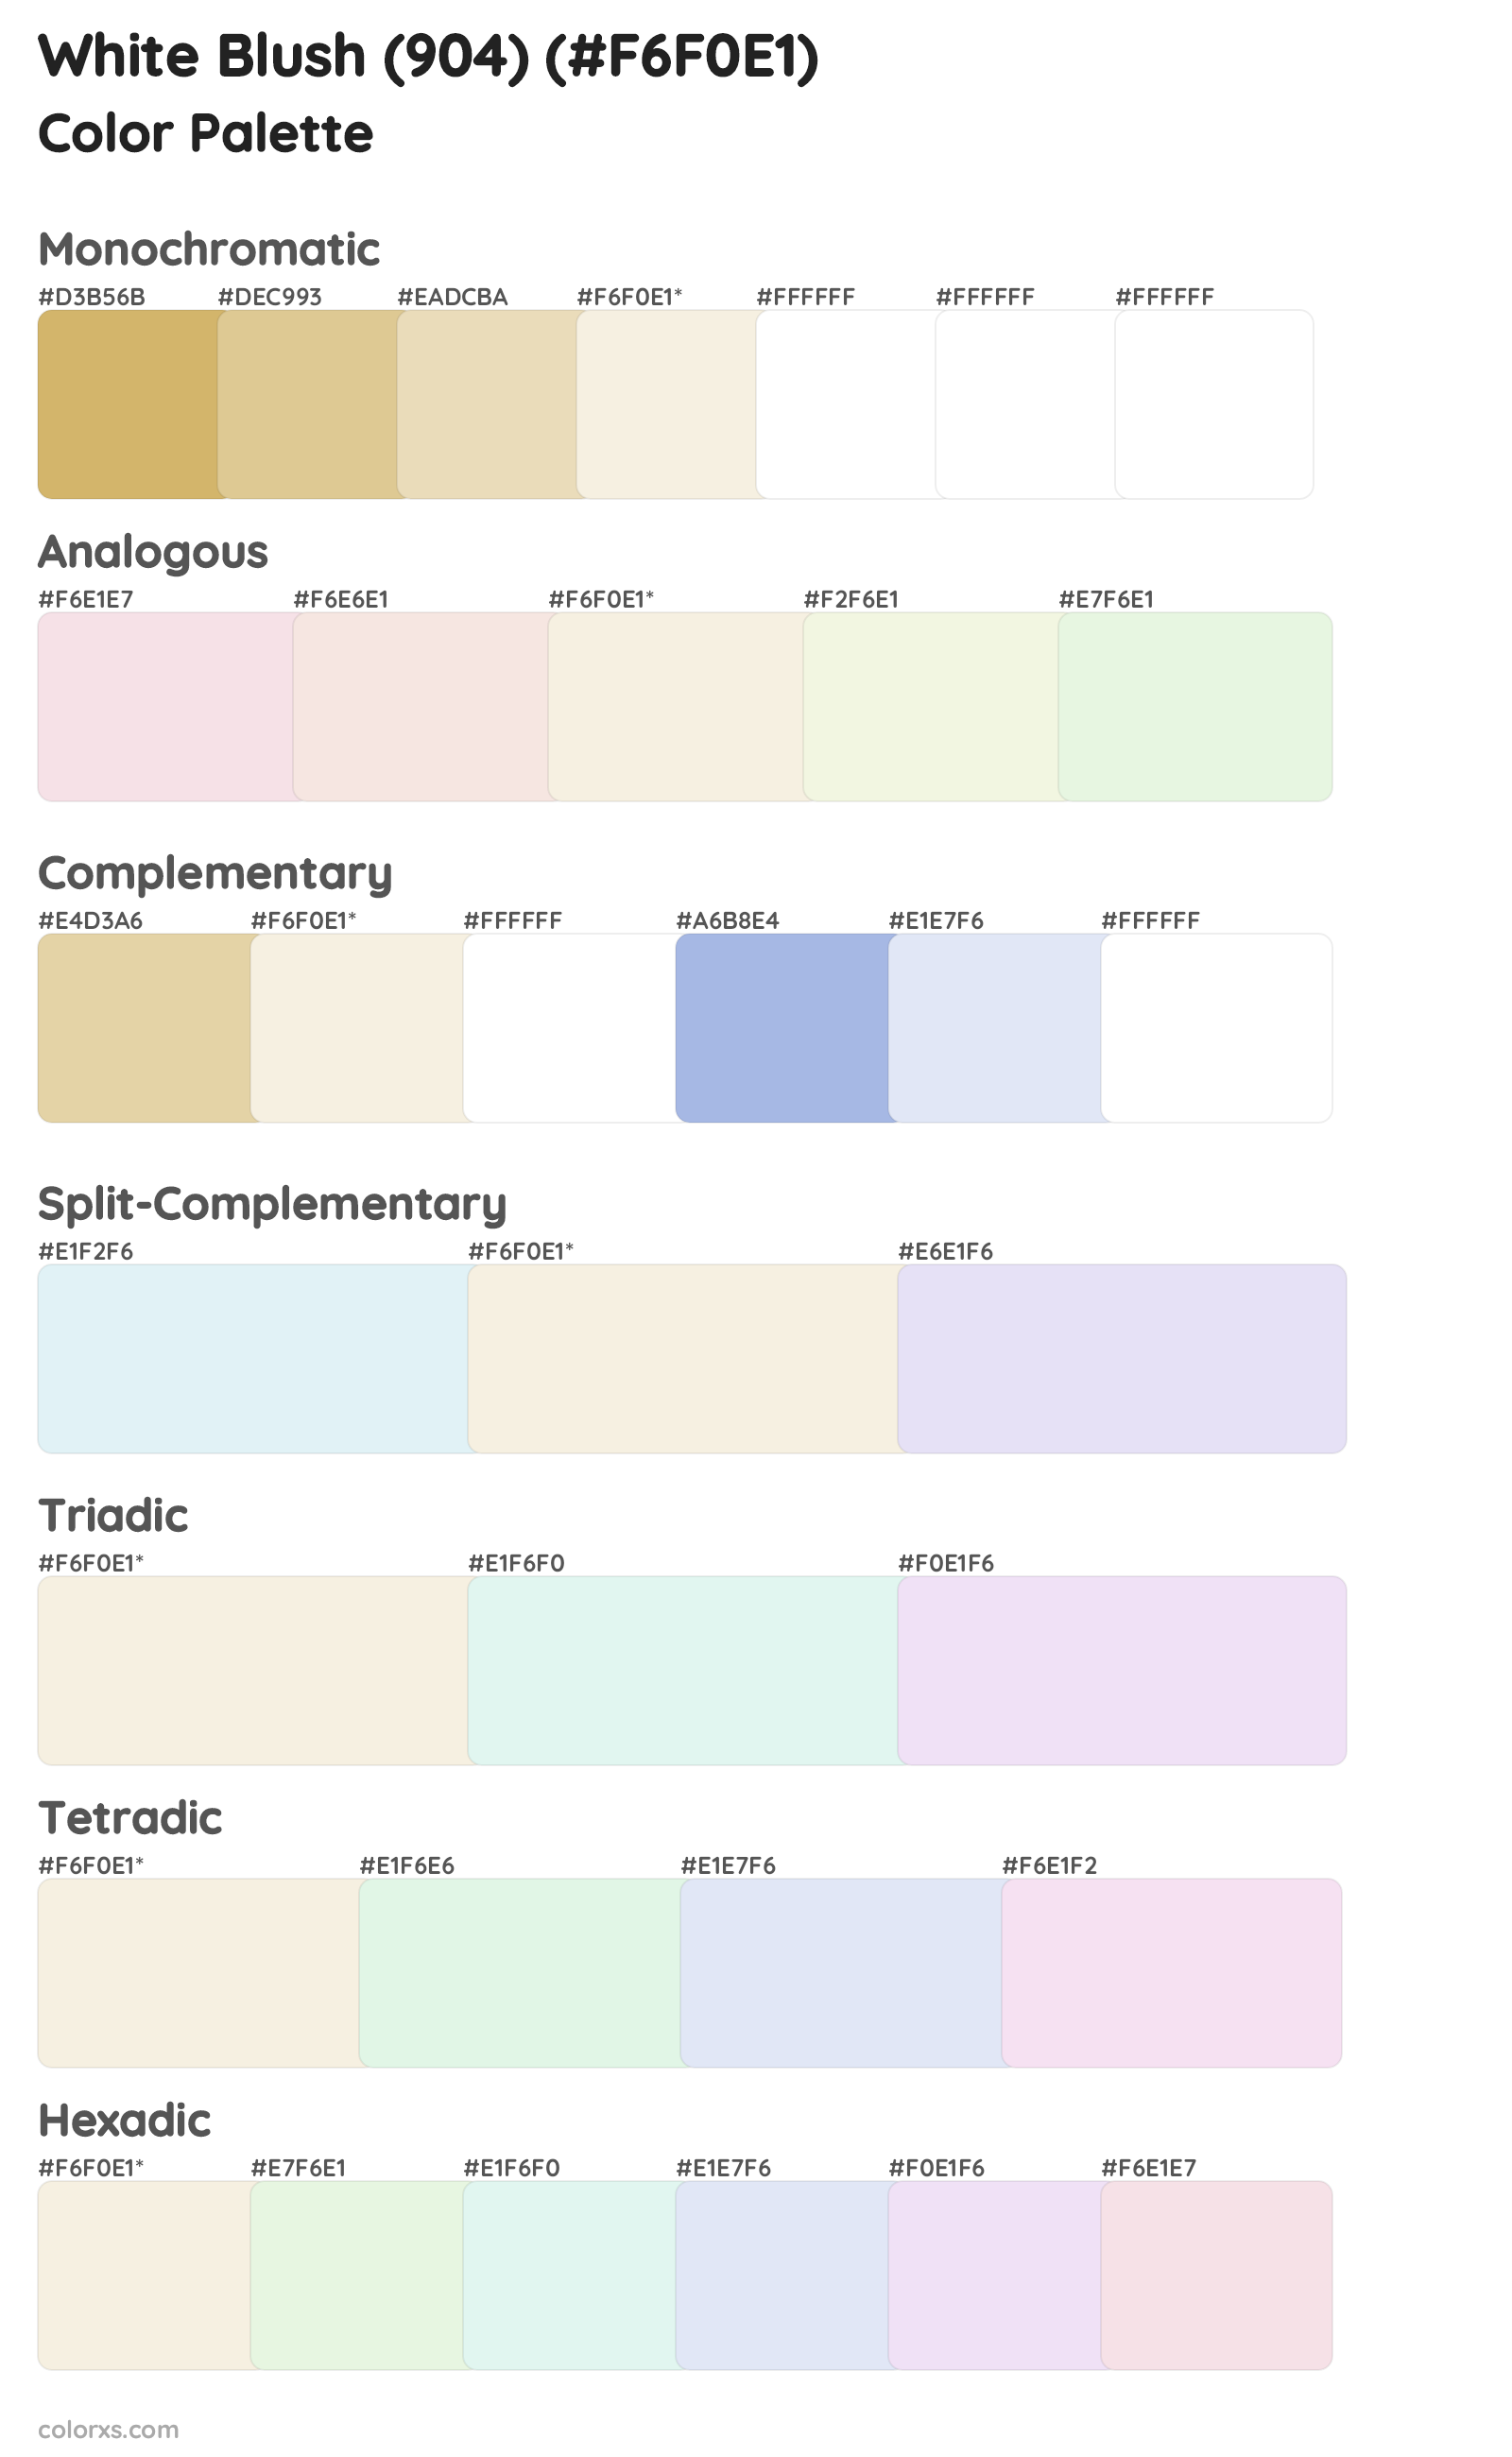 White Blush (904) Color Scheme Palettes